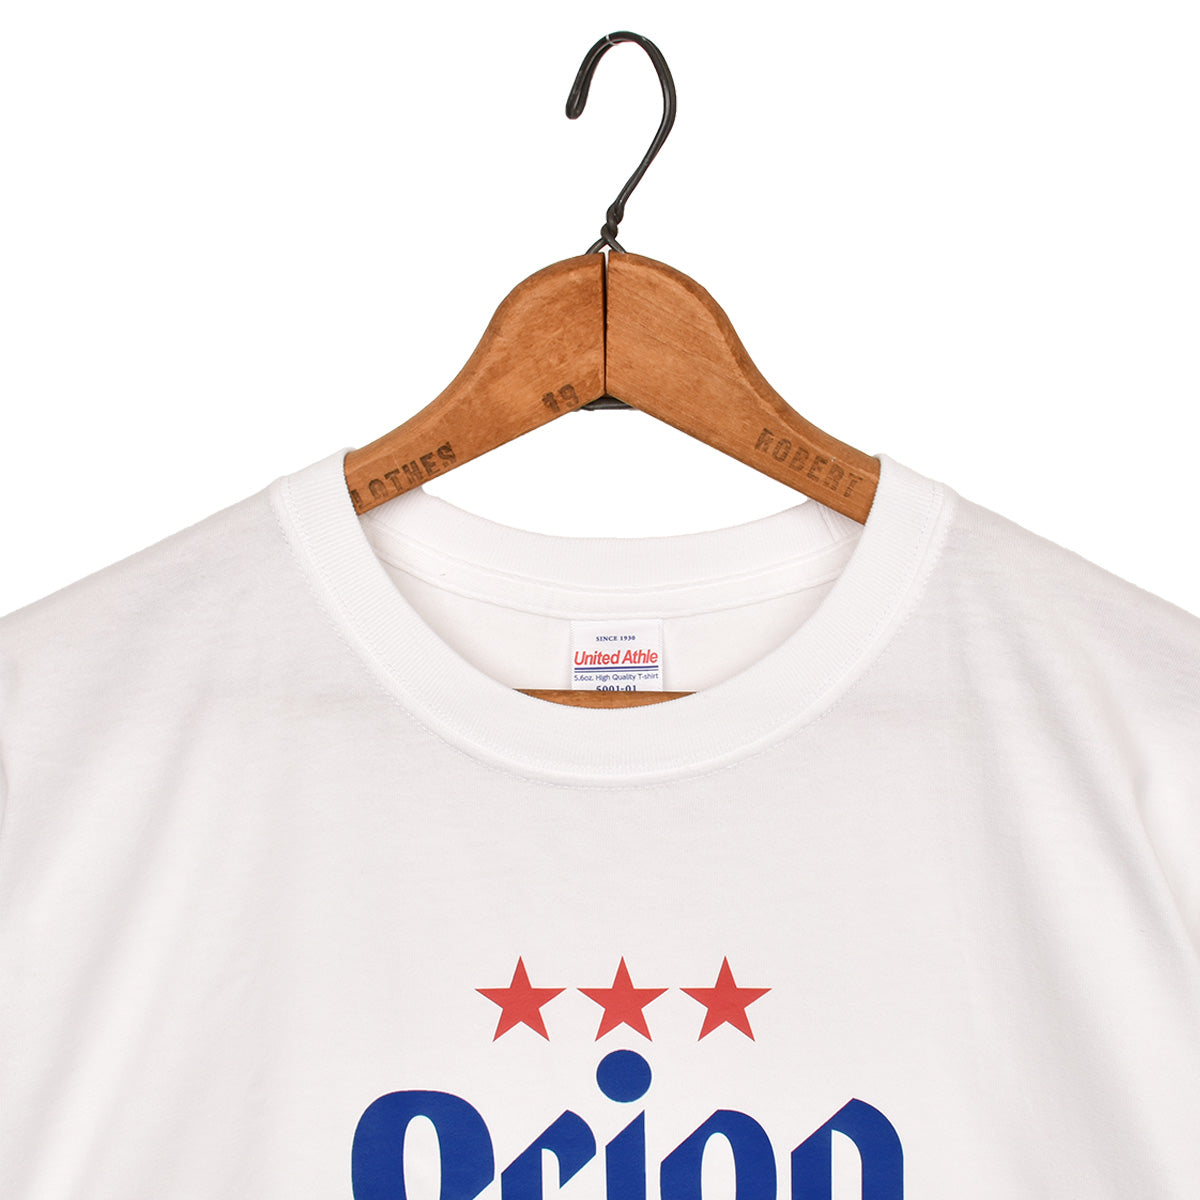 [別注] Orion Beer × SHAKA コラボレーション Tシャツ [メンズ/レディース][2024 春夏] SK-